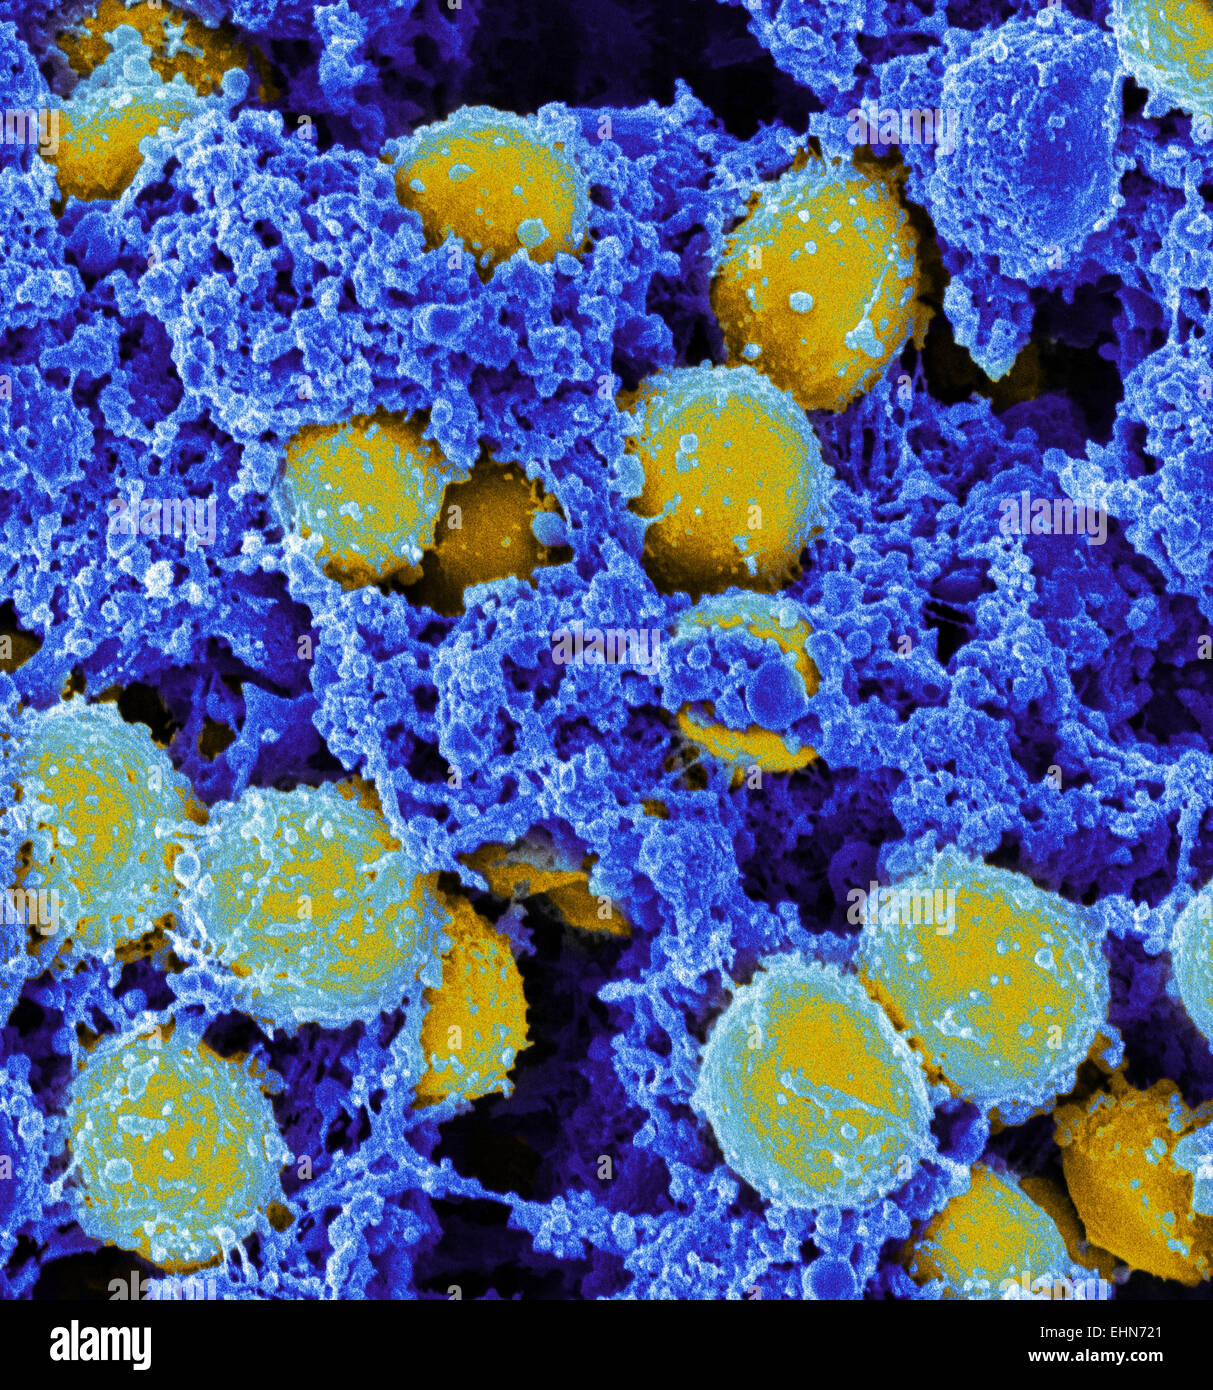 Farbige scanning Electron Schliffbild (SEM) von Methicillin-resistenten Staphylococcus Aureus (MRSA) Bakterien. Stockfoto